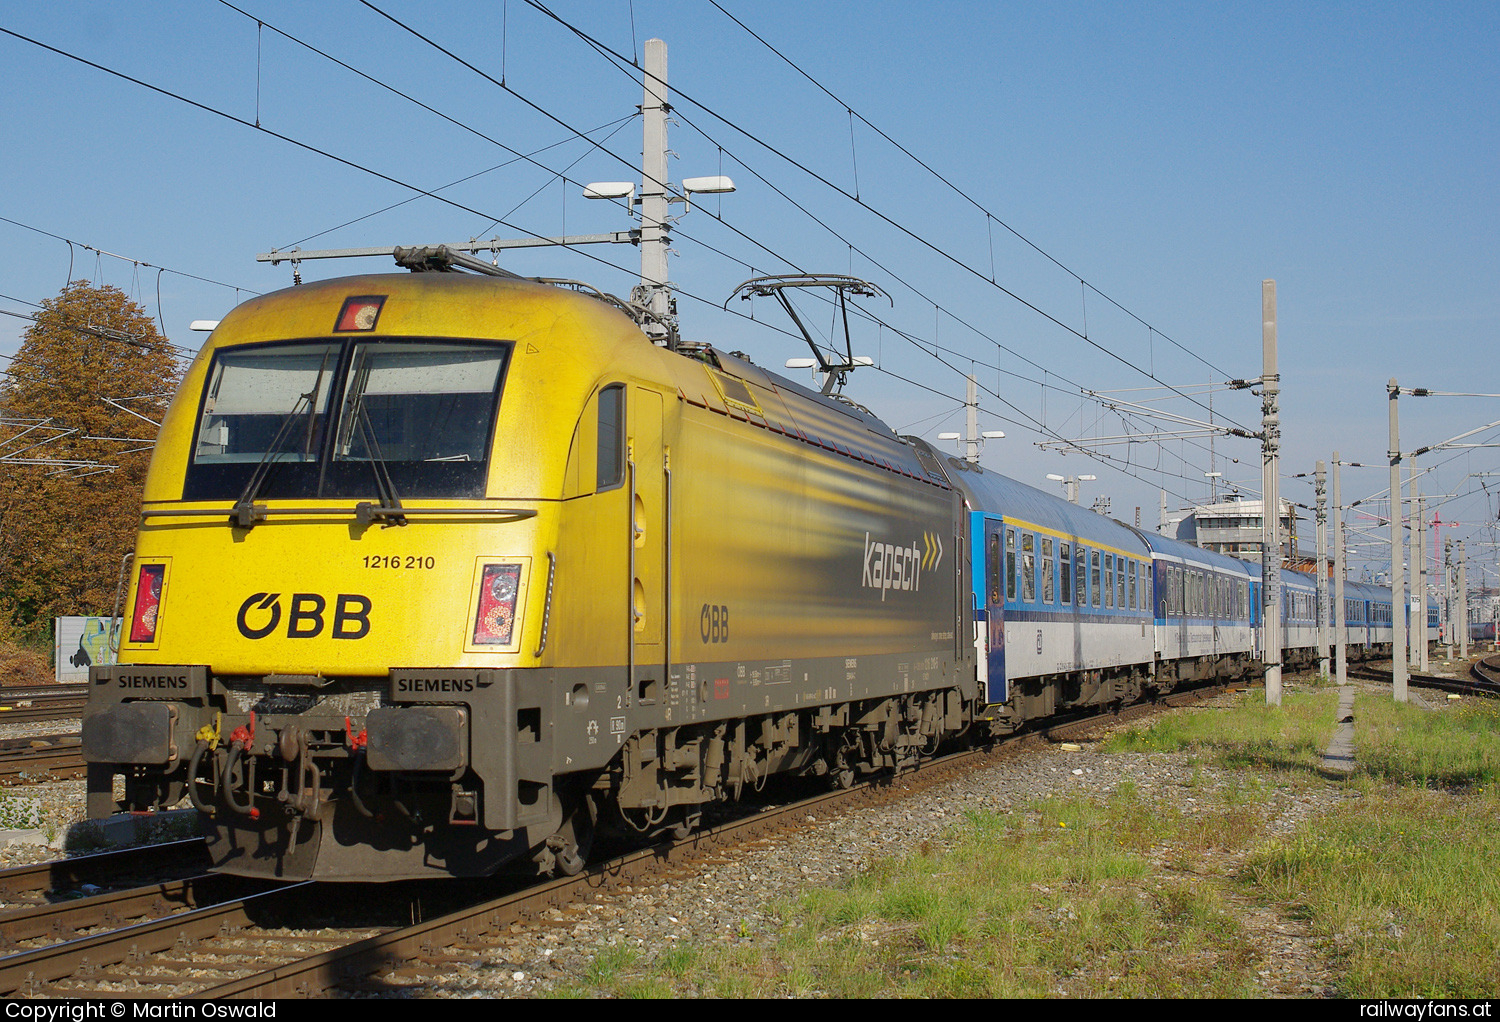 ÖBB 1216 210 in Wien Meidling mit dem EC77 - Kapsch Werbelok   Railwayfans